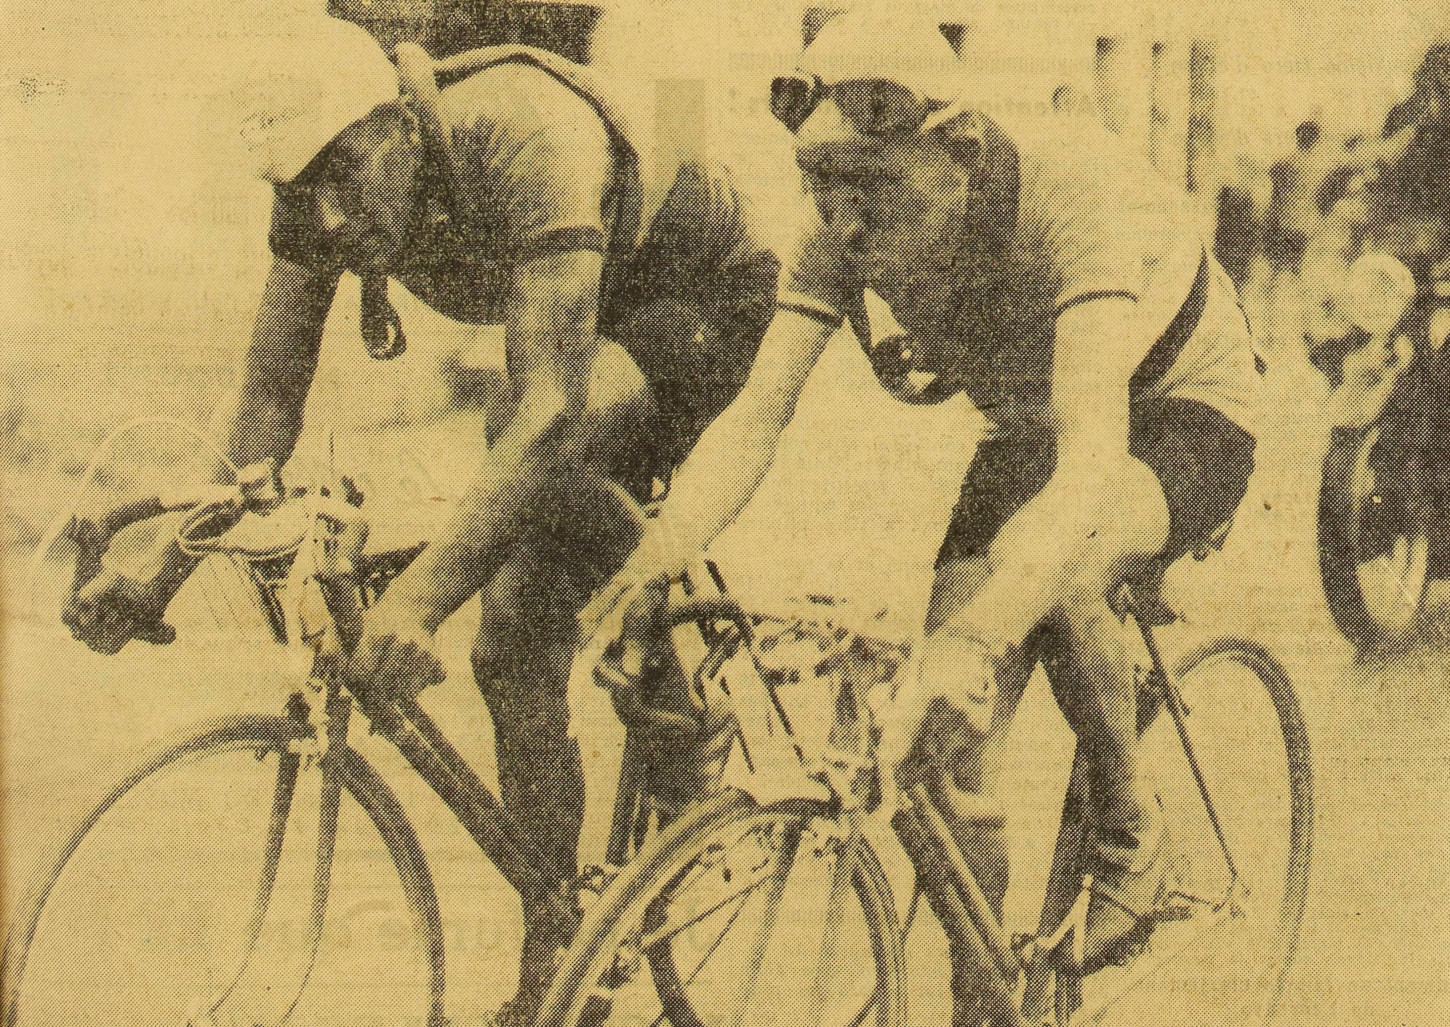 Le morbihannais Jean-Marie Goasmat, originaire de Calmors, lors de l'arrivée à Nantes, le 7 juillet 1938, de la troisième étape du Tour de France. Cliché publié le 8 juillet 1938 dans le quotidien L'Auto. Gallica / Bibliothèque nationale de France.